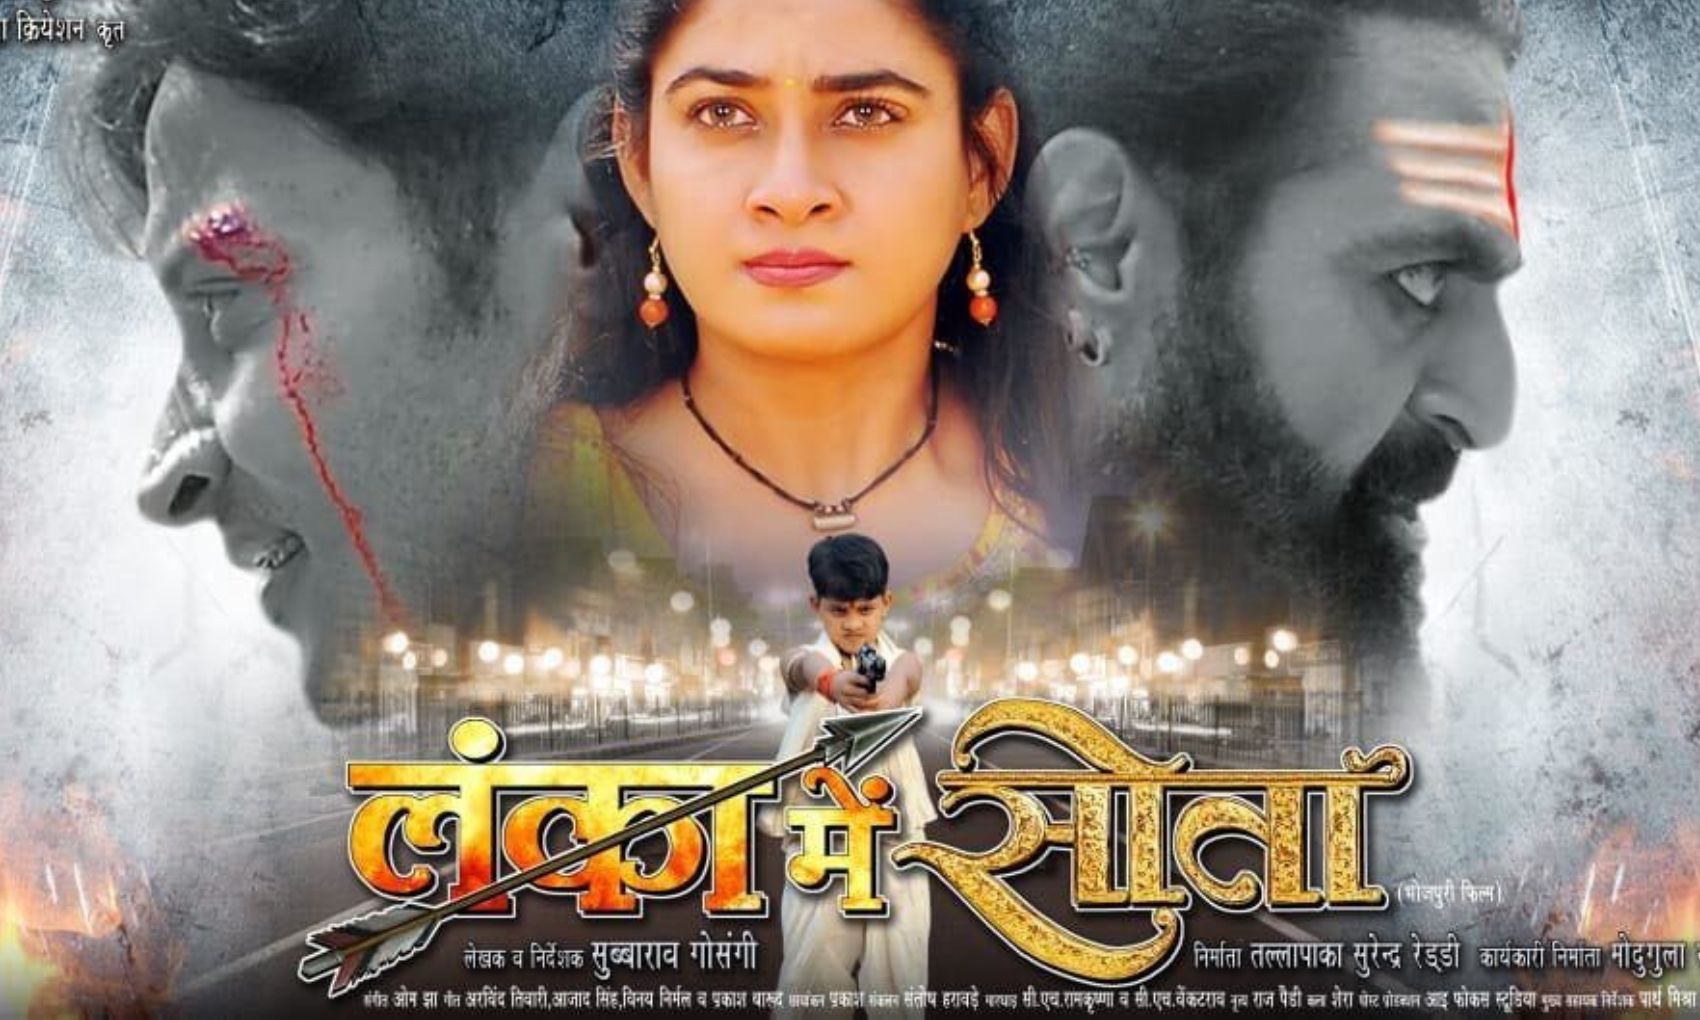 Bhojpuri: निसार खान और ऋतु सिंह की फिल्म ‘लंका में सीता’ के पोस्टर ने जीता जनता का दिल, फर्स्ट लुक हुआ वायरल